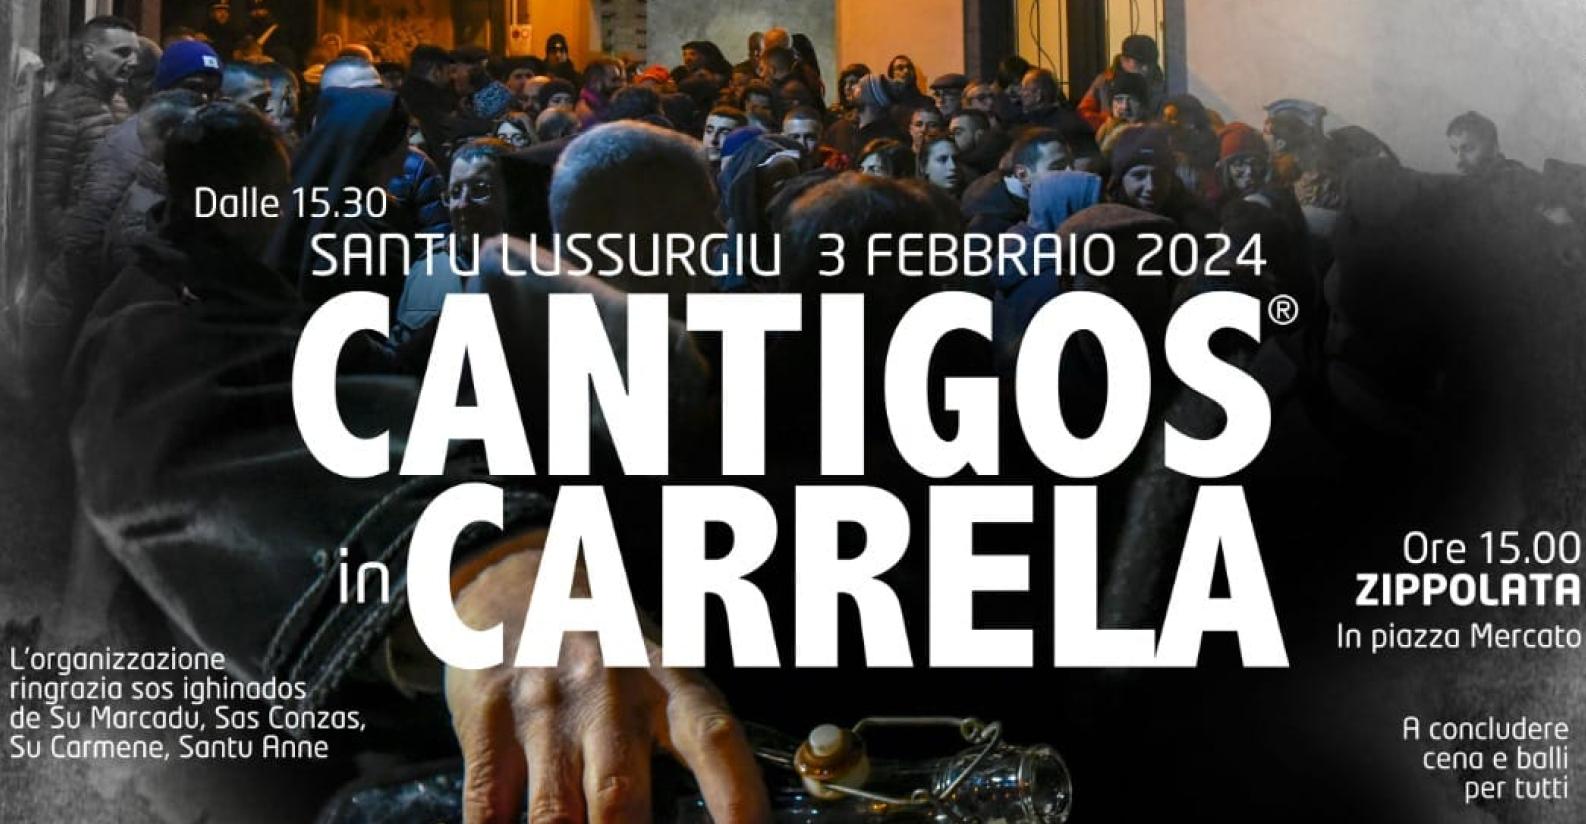 Cantigos_in_carrela24